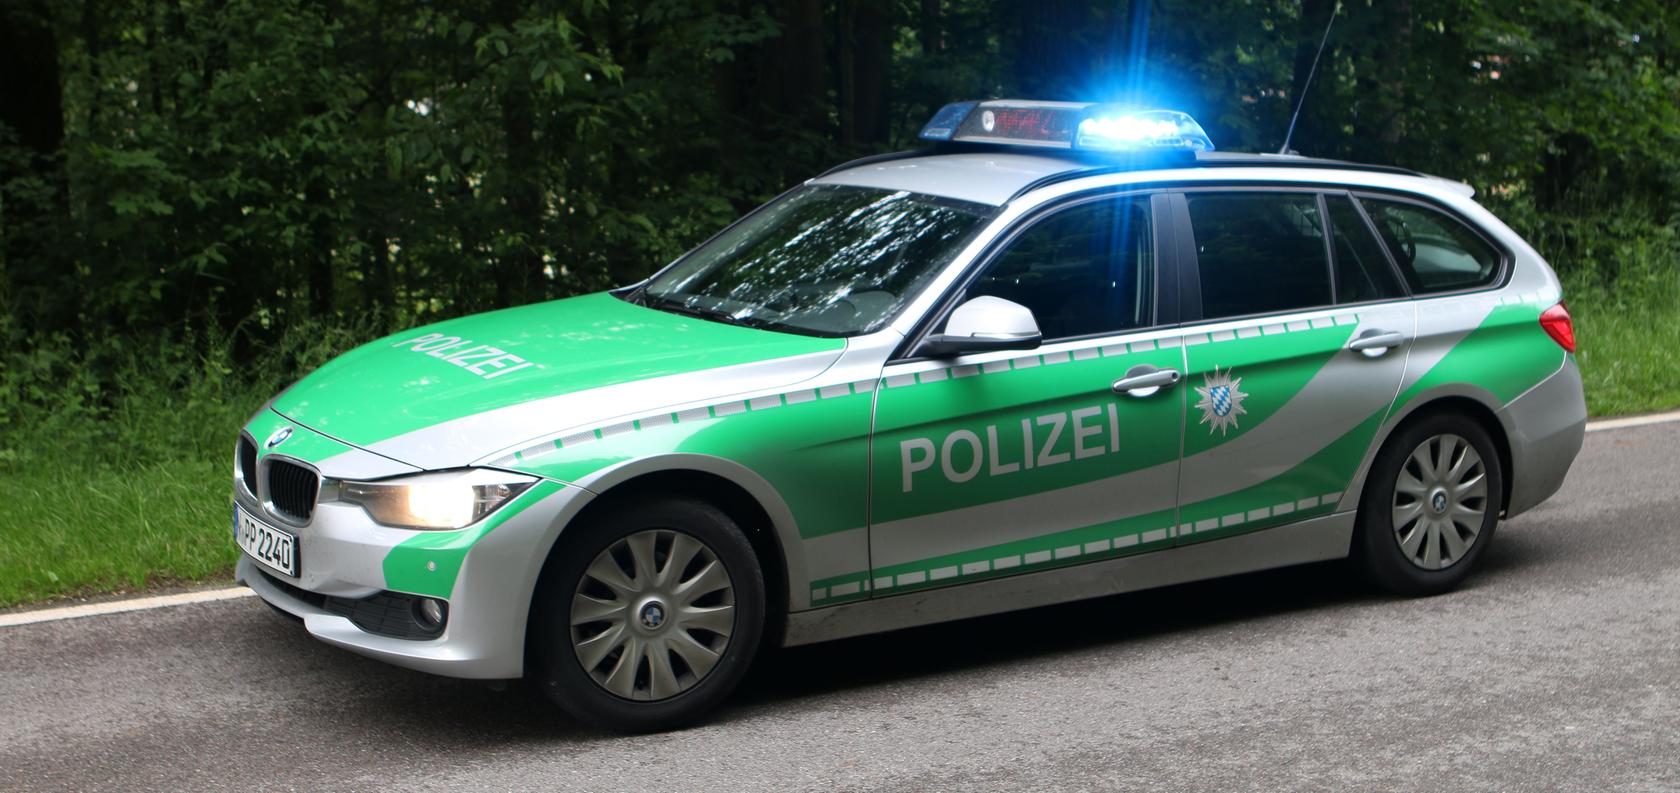 Bereits am Dienstag hat ein Mann in Oberasbach Landkreis Fürth mehrere Schülerinnen sexuell belästigt. Die Polizei bittet um Hinweise.